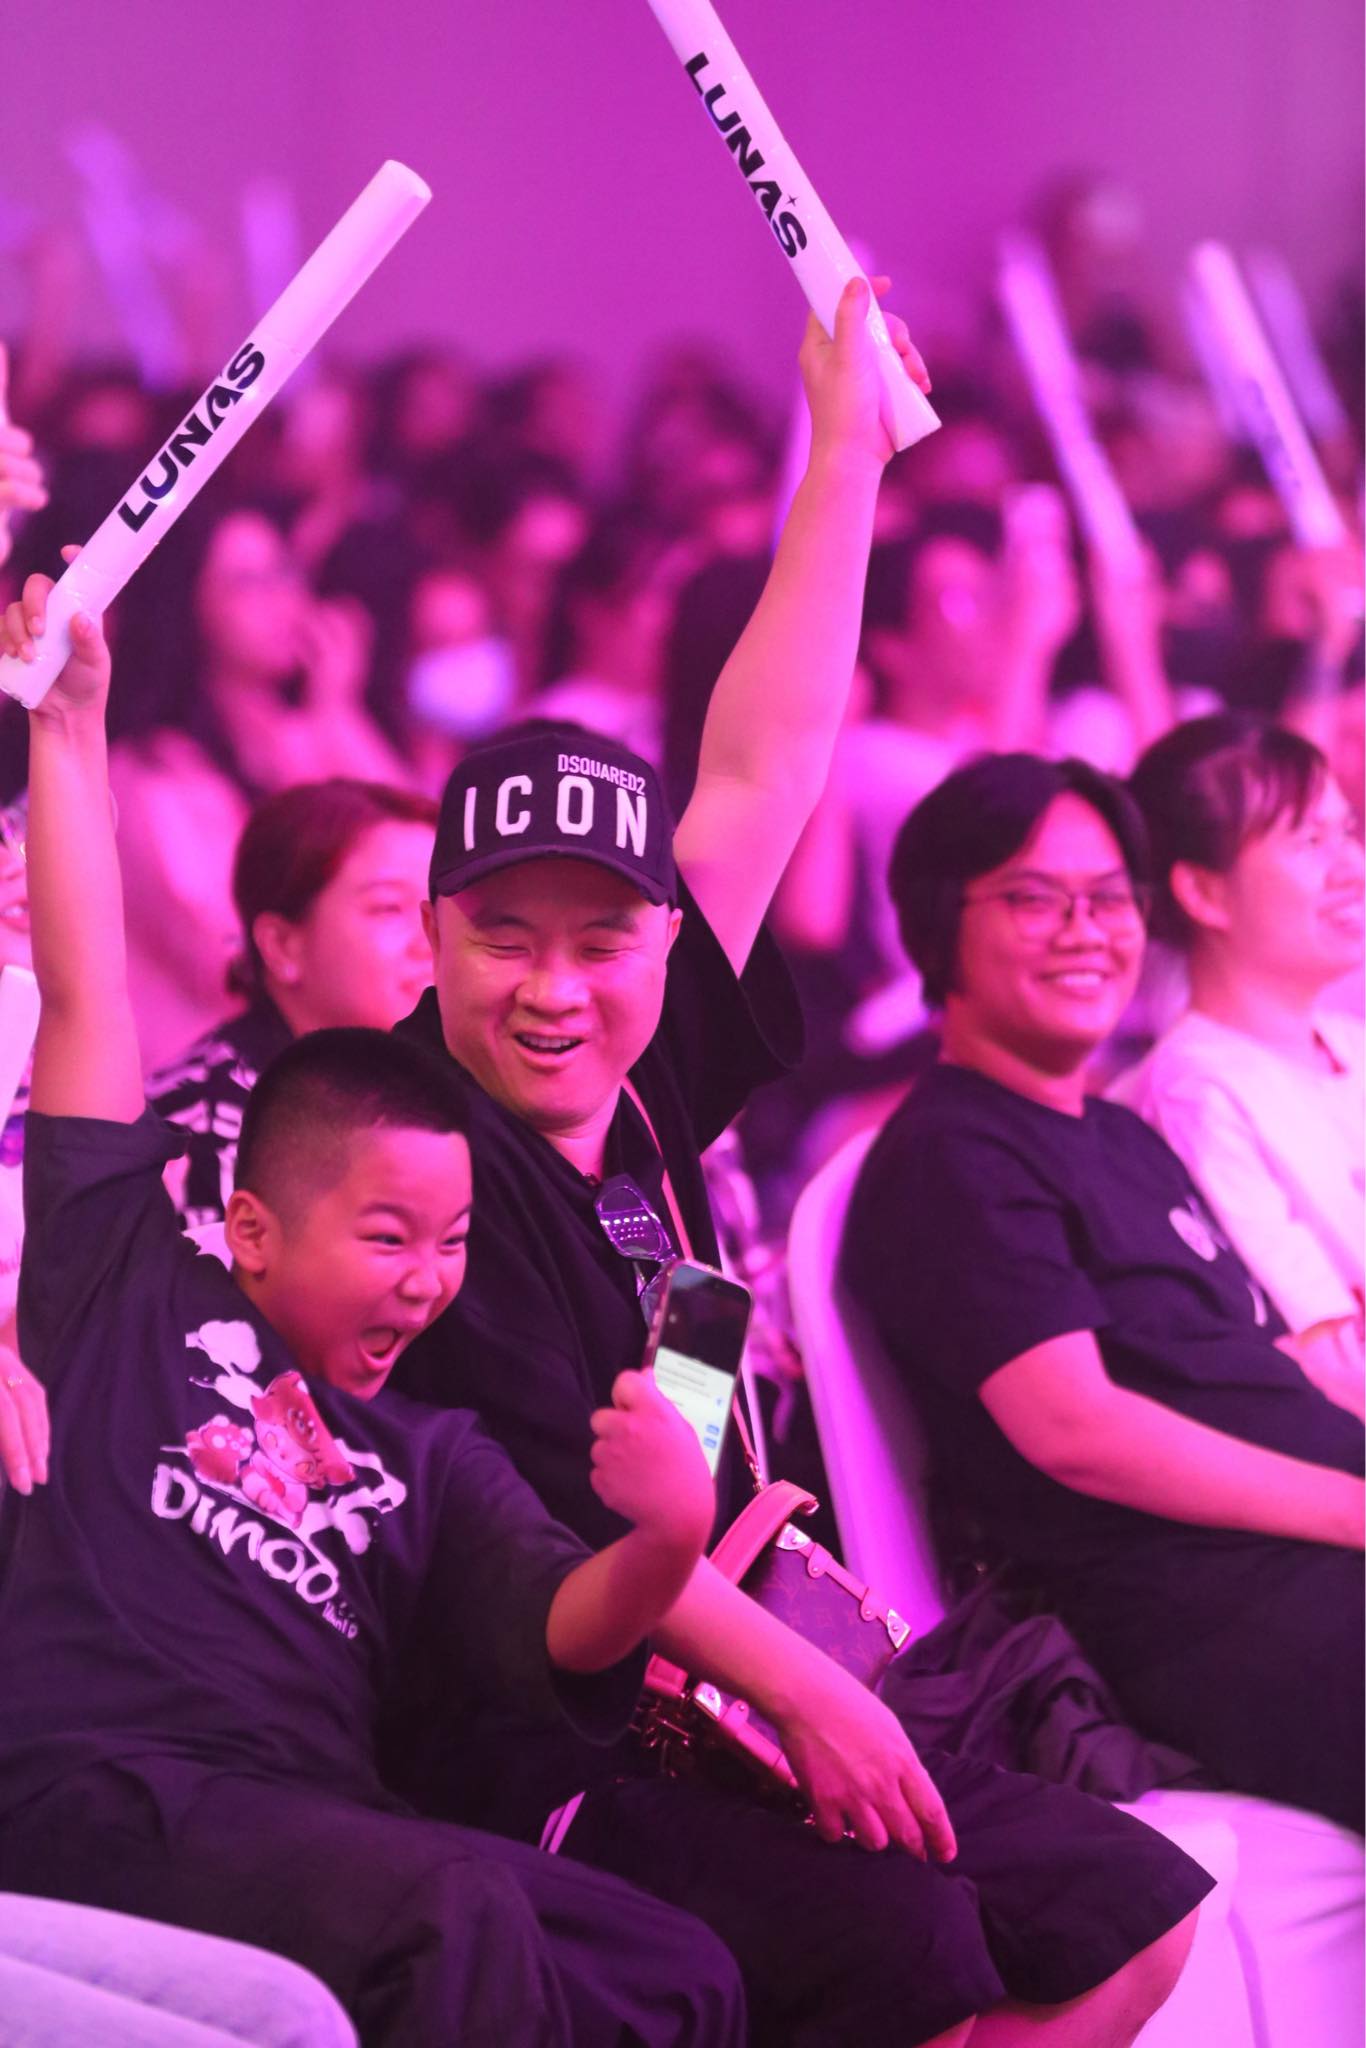 Đỗ Mạnh Cường đưa con trai đến showcase debut của LUNAS, cổ vũ đúng chuẩn 'fan cứng' - ảnh 2